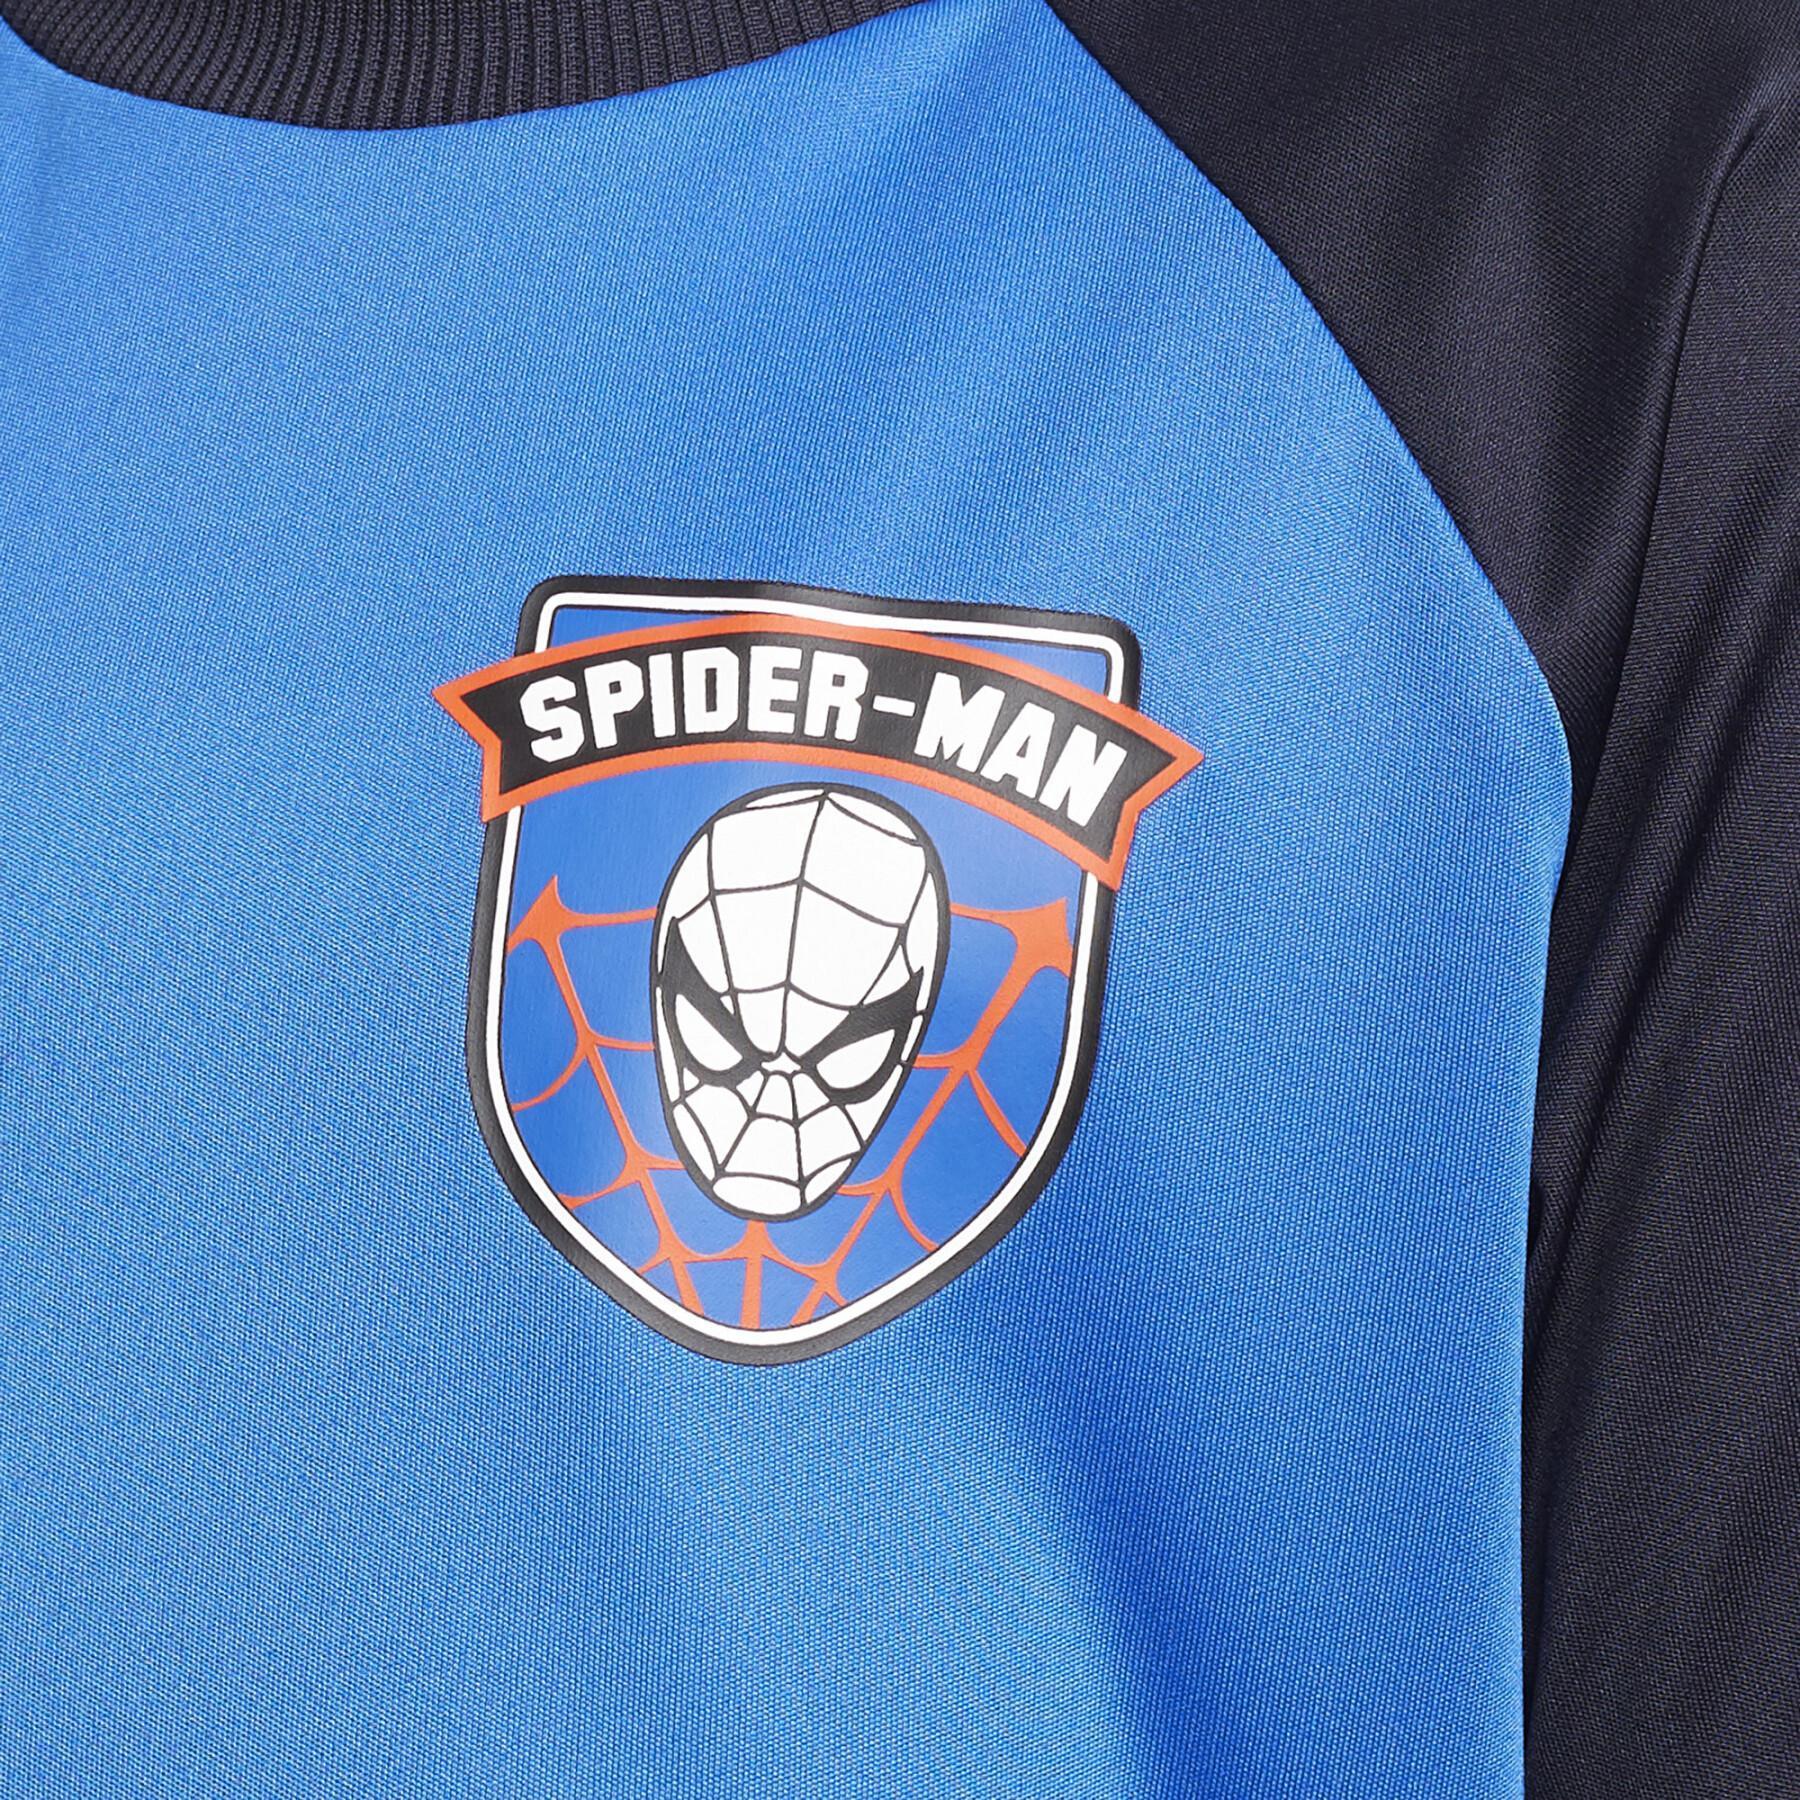 Kinderset adidas Marvel Spider-Man